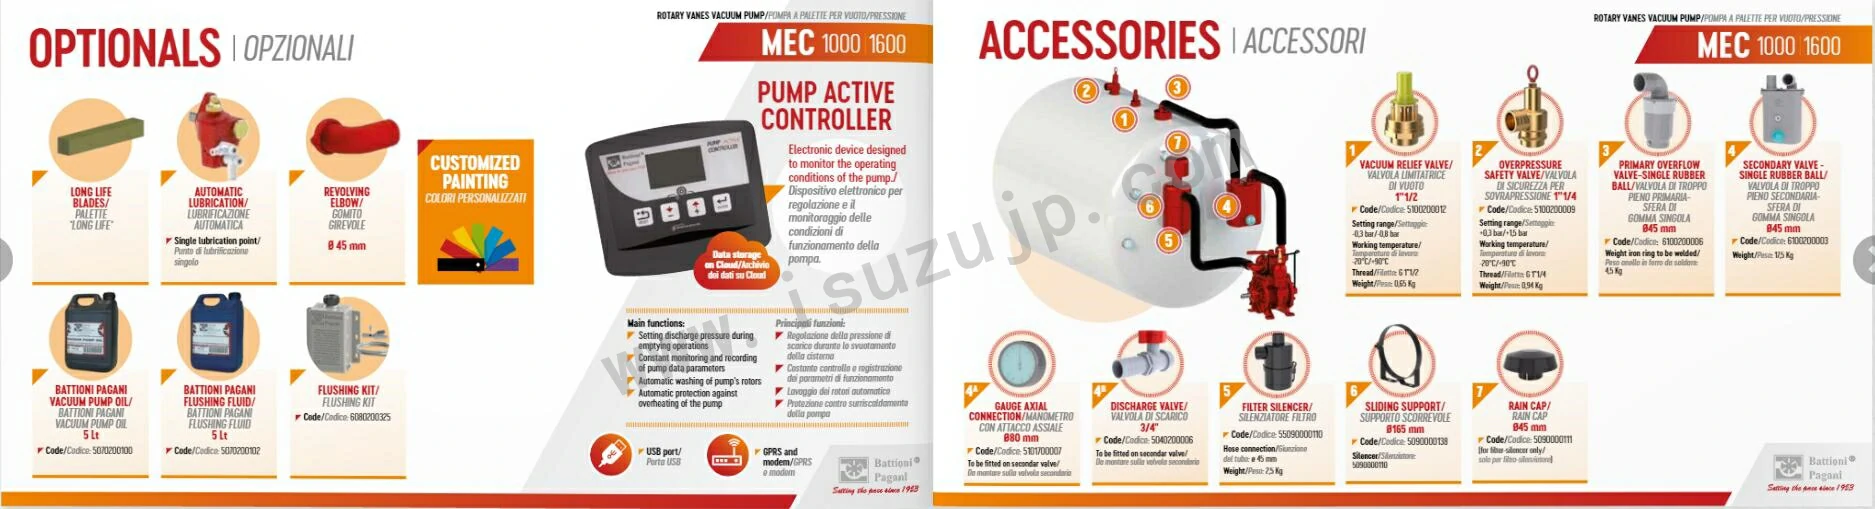 BATTIONI PAGANI MEC 1000-8000 Vacuum Pump Instructions 2